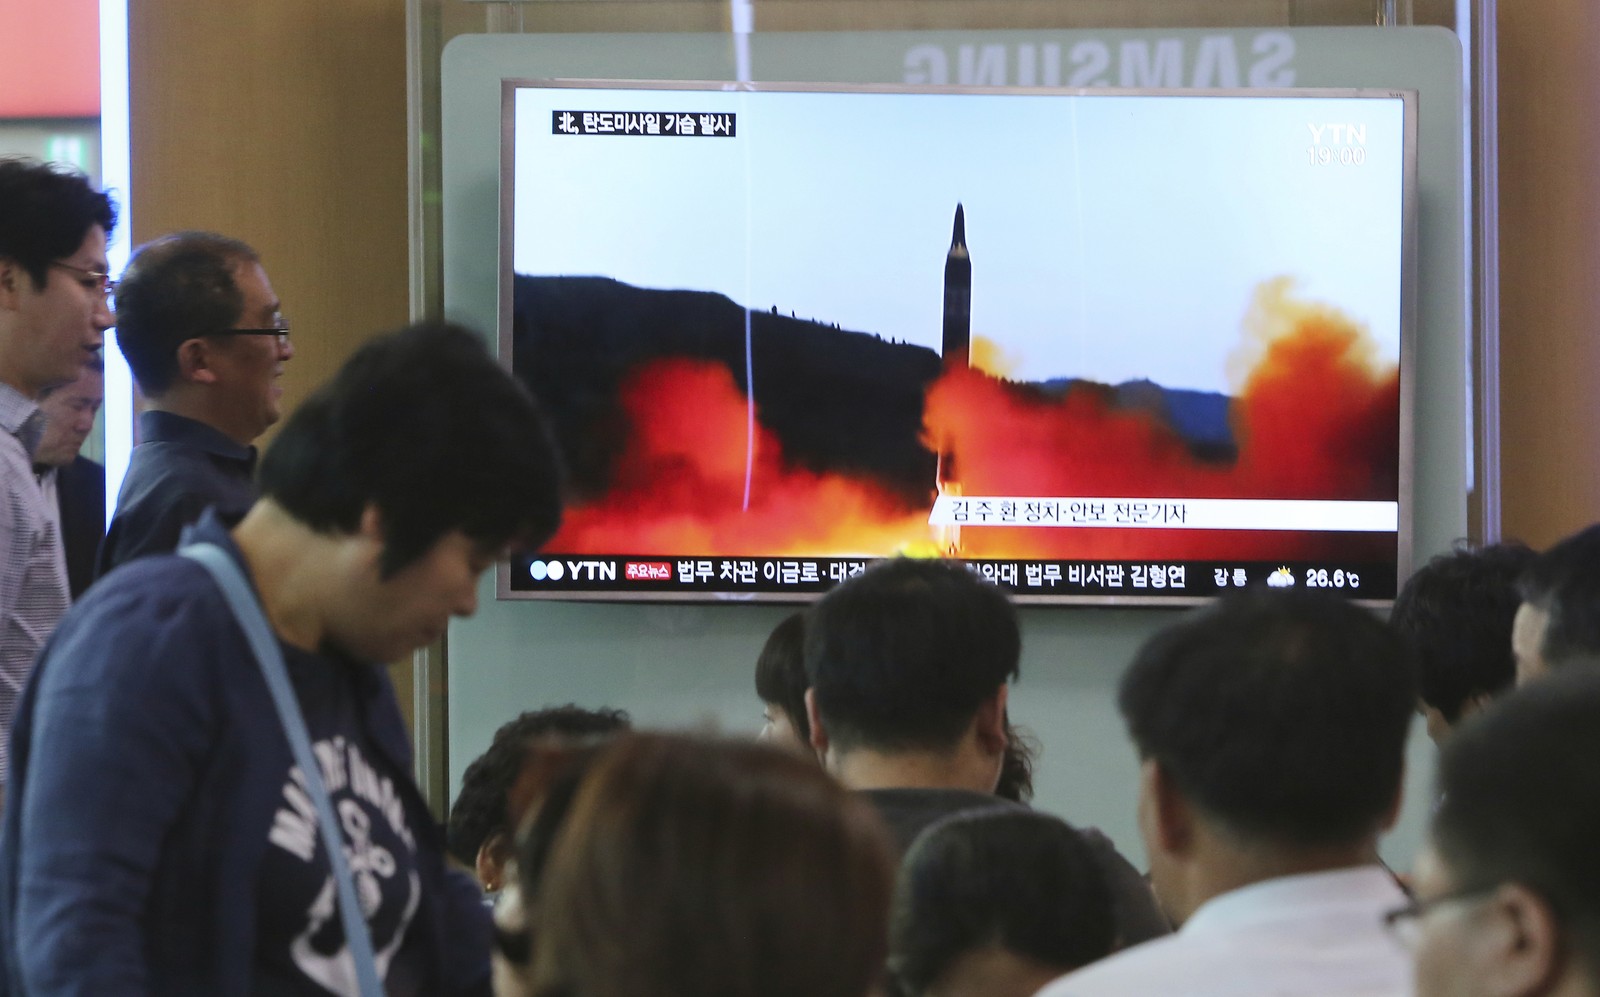   Pessoas assistem a programa de TV que mostra míssil lançado pela Coreia do Norte